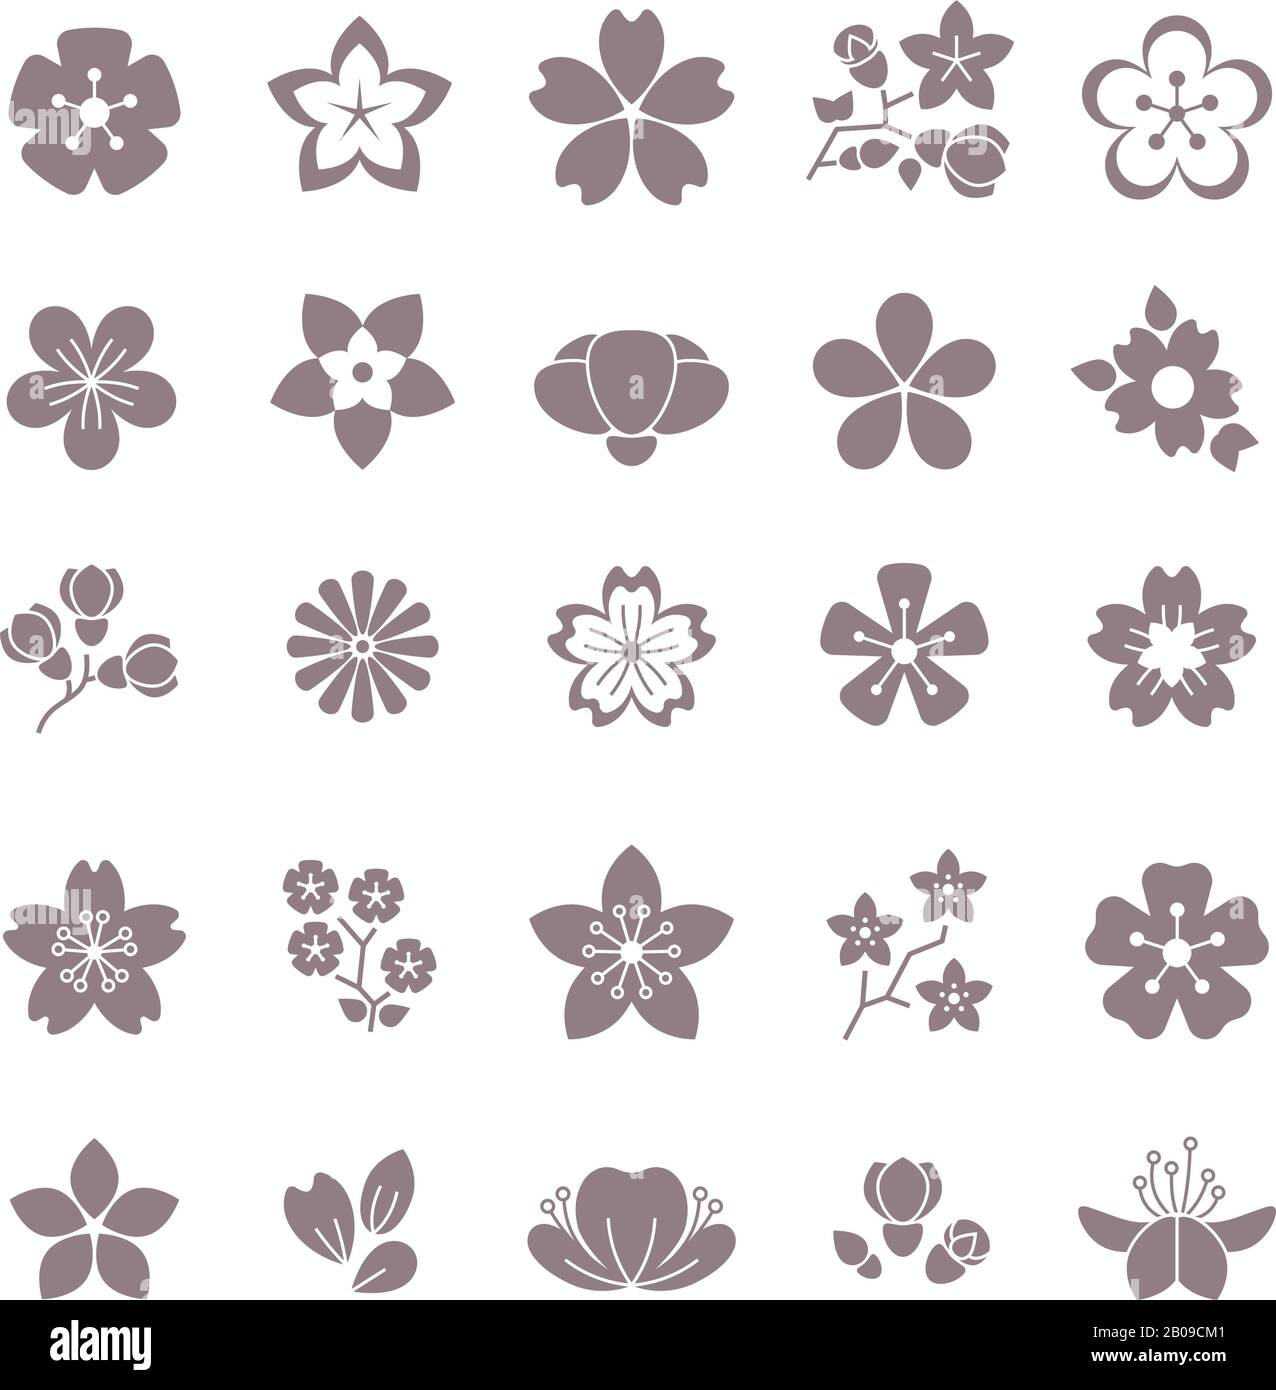 Einfache Vektorsymbole mit Blumen- und Blumenmuster. Silhouette von Blumen, Illustration blüht Blume Stock Vektor